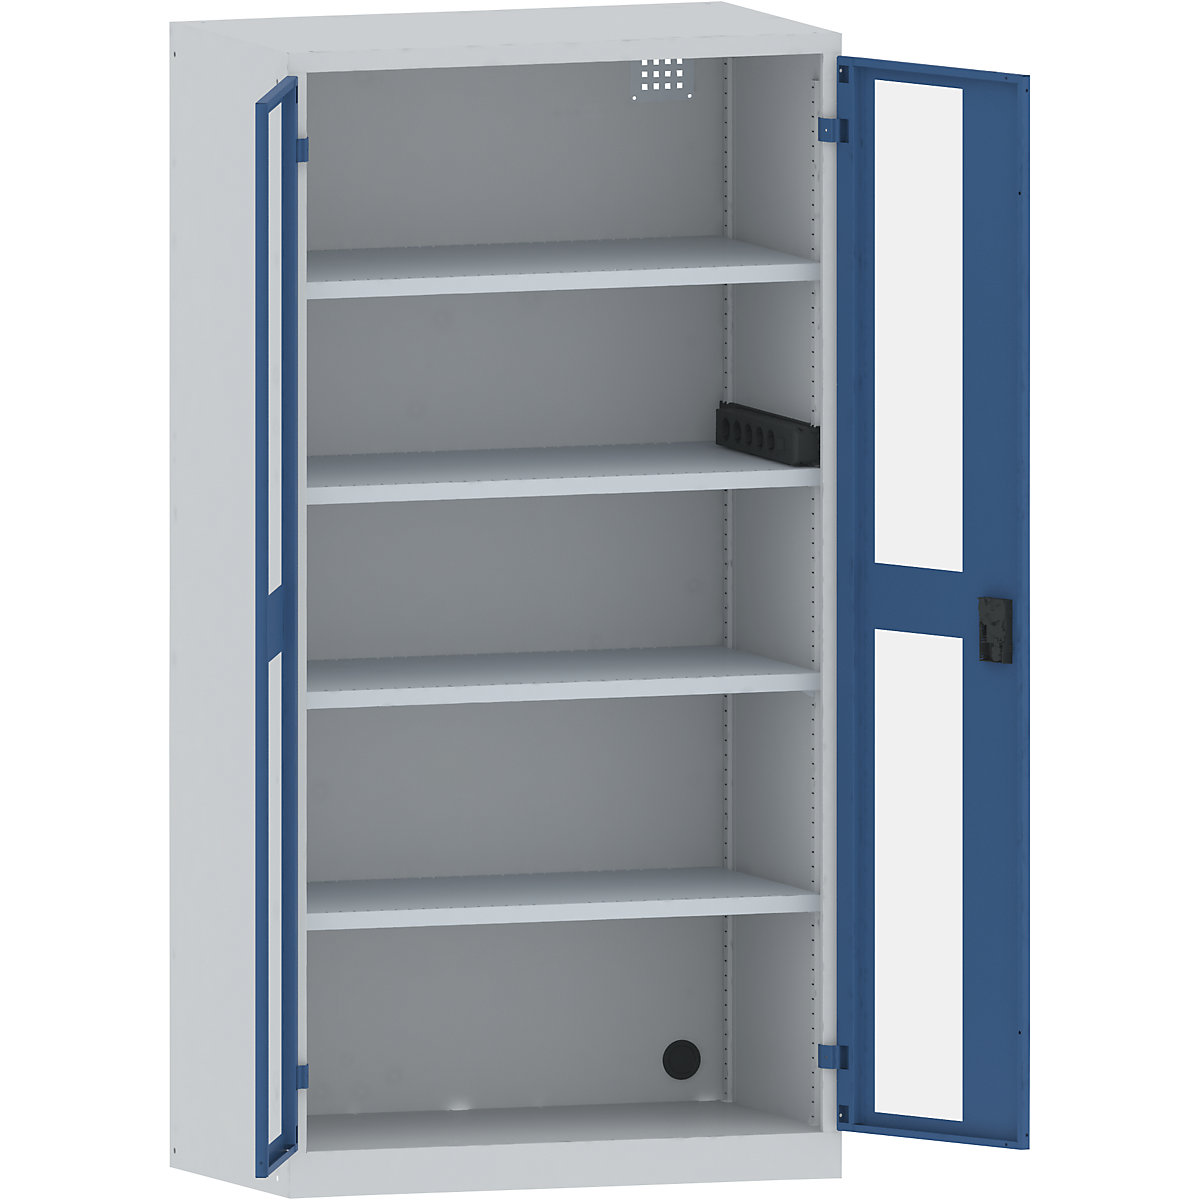 Accuoplaadkast met stroomvoorziening – LISTA, 4 legborden, deuren met zichtvenster, contactdooslijst op de zijkant, grijs/blauw-17